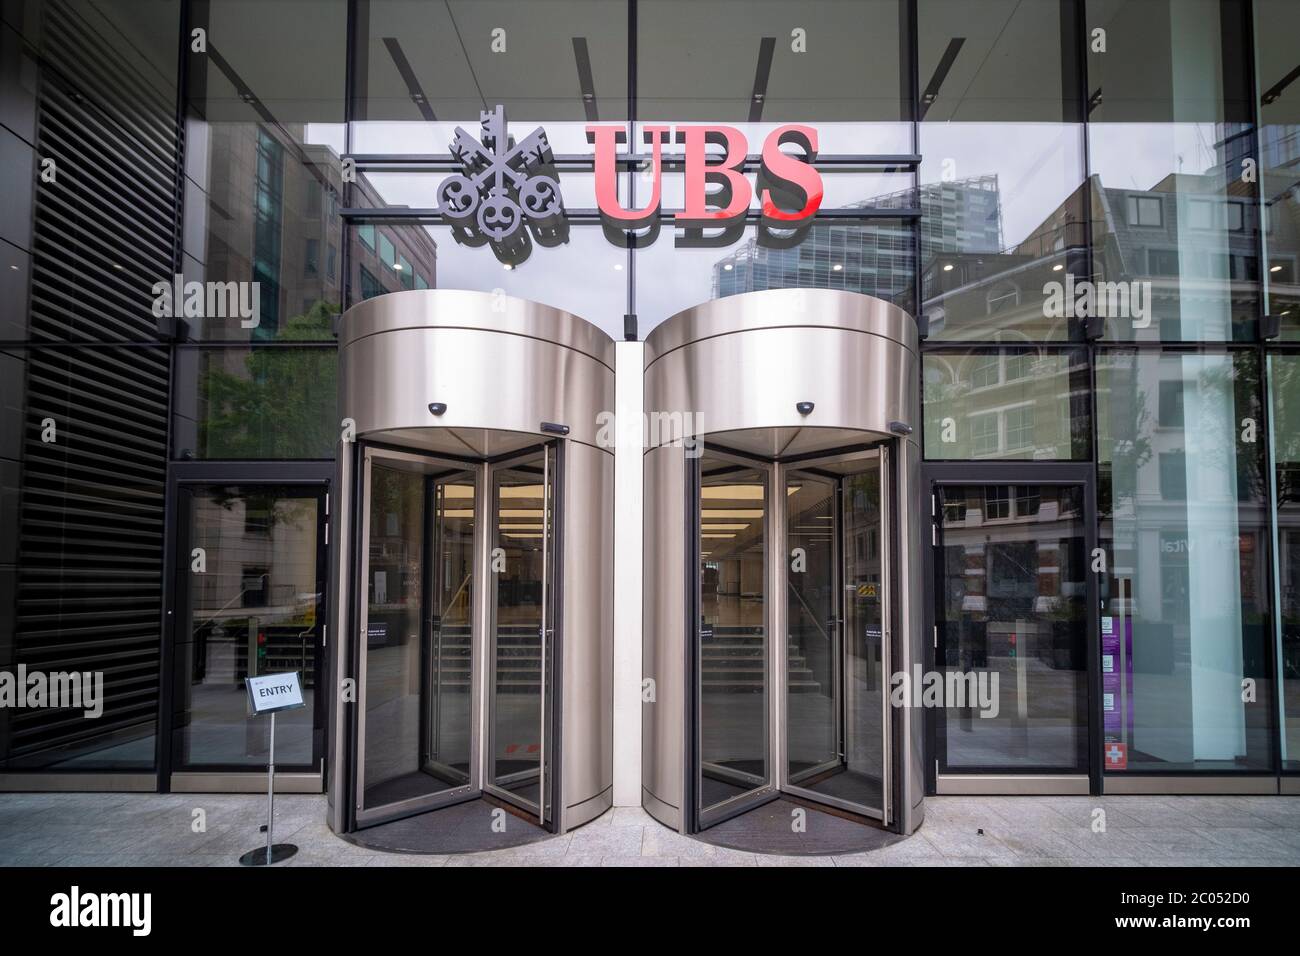 LONDRES- JUIN 2020: UBS Group AG dans la ville de Londres, une banque multinationale suisse d'investissement et de services financiers Banque D'Images